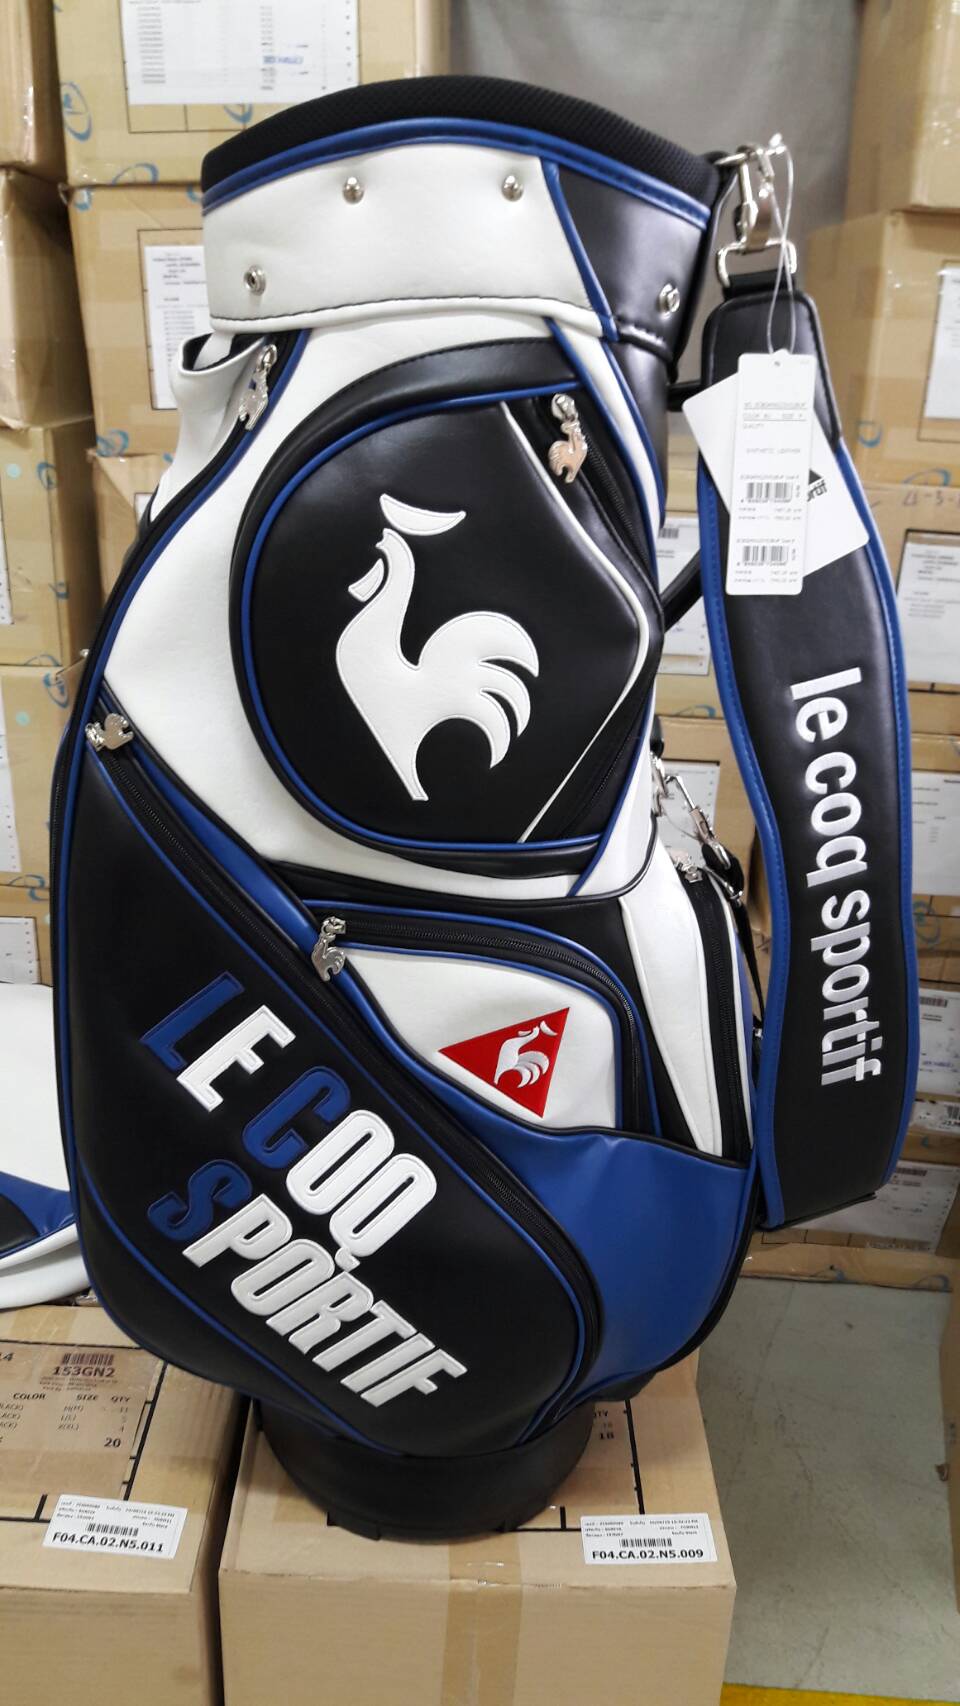 ขาย ถุงกอล์ฟ (ของใหม่) le coq sportif ราคาถูกมาก ของมีจำนวนจำกัด ( New Golf bag on sales ) รูปที่ 1